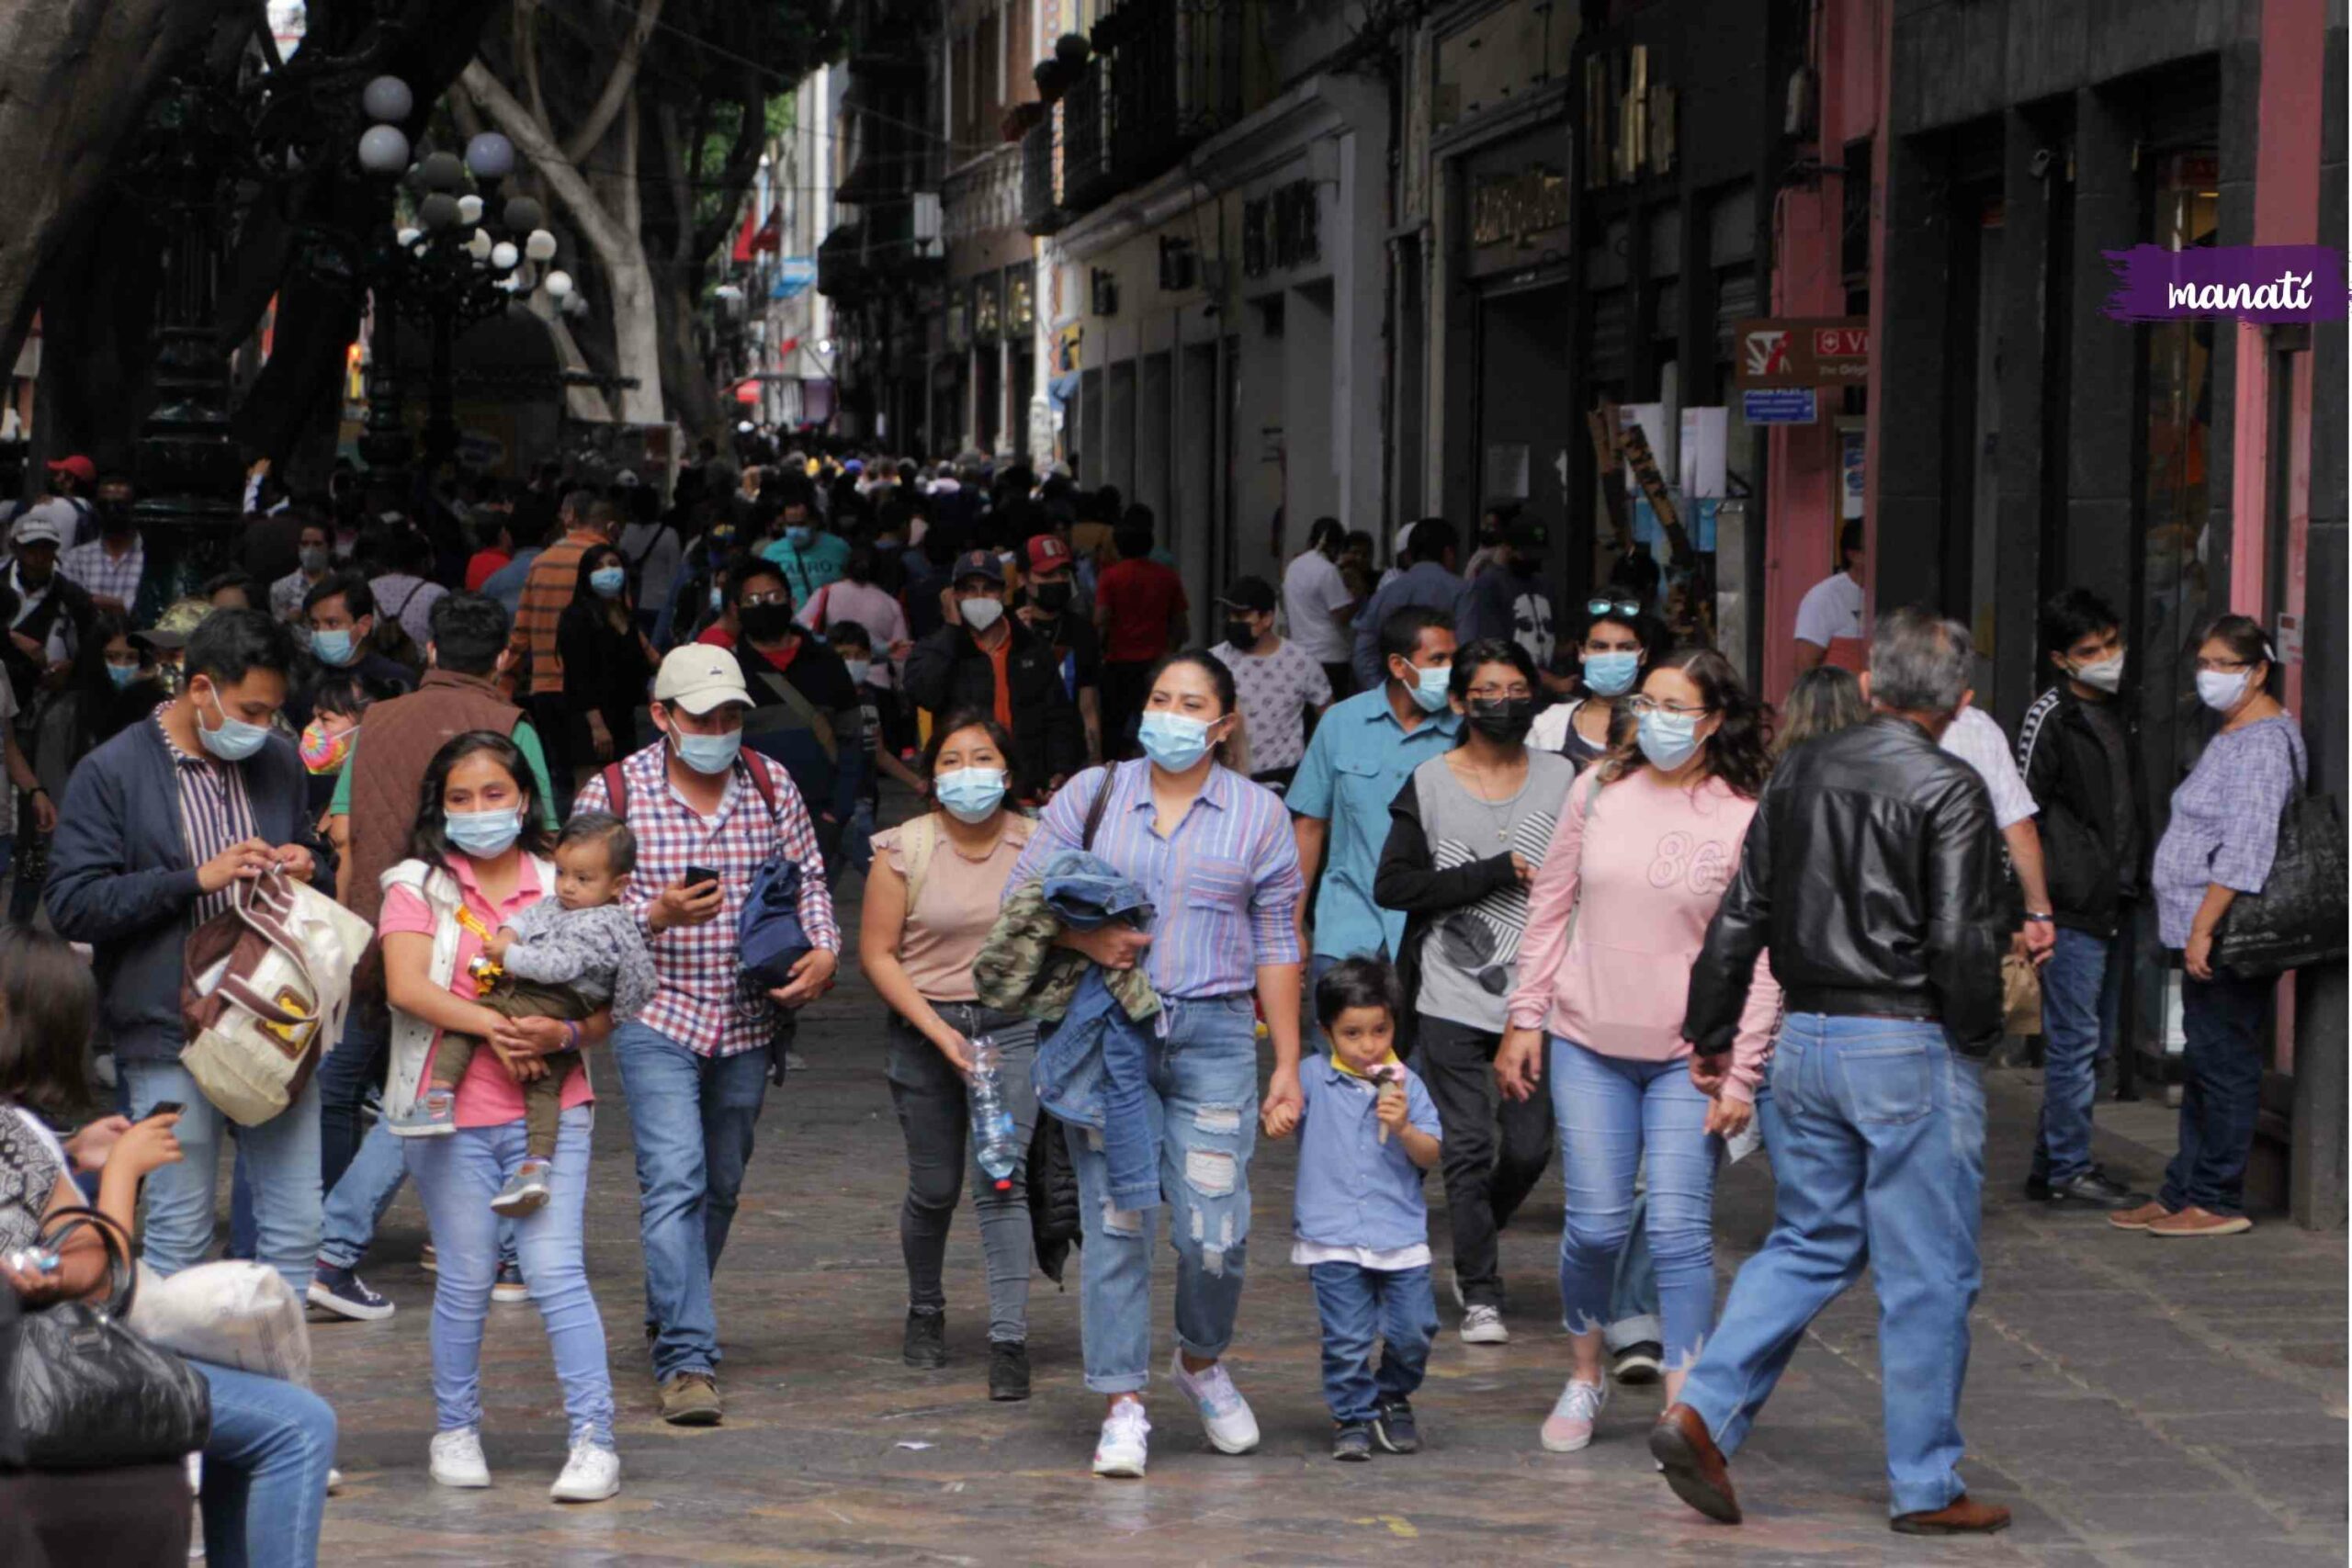 mujeres y personas caminando por el centro histórico de Puebla